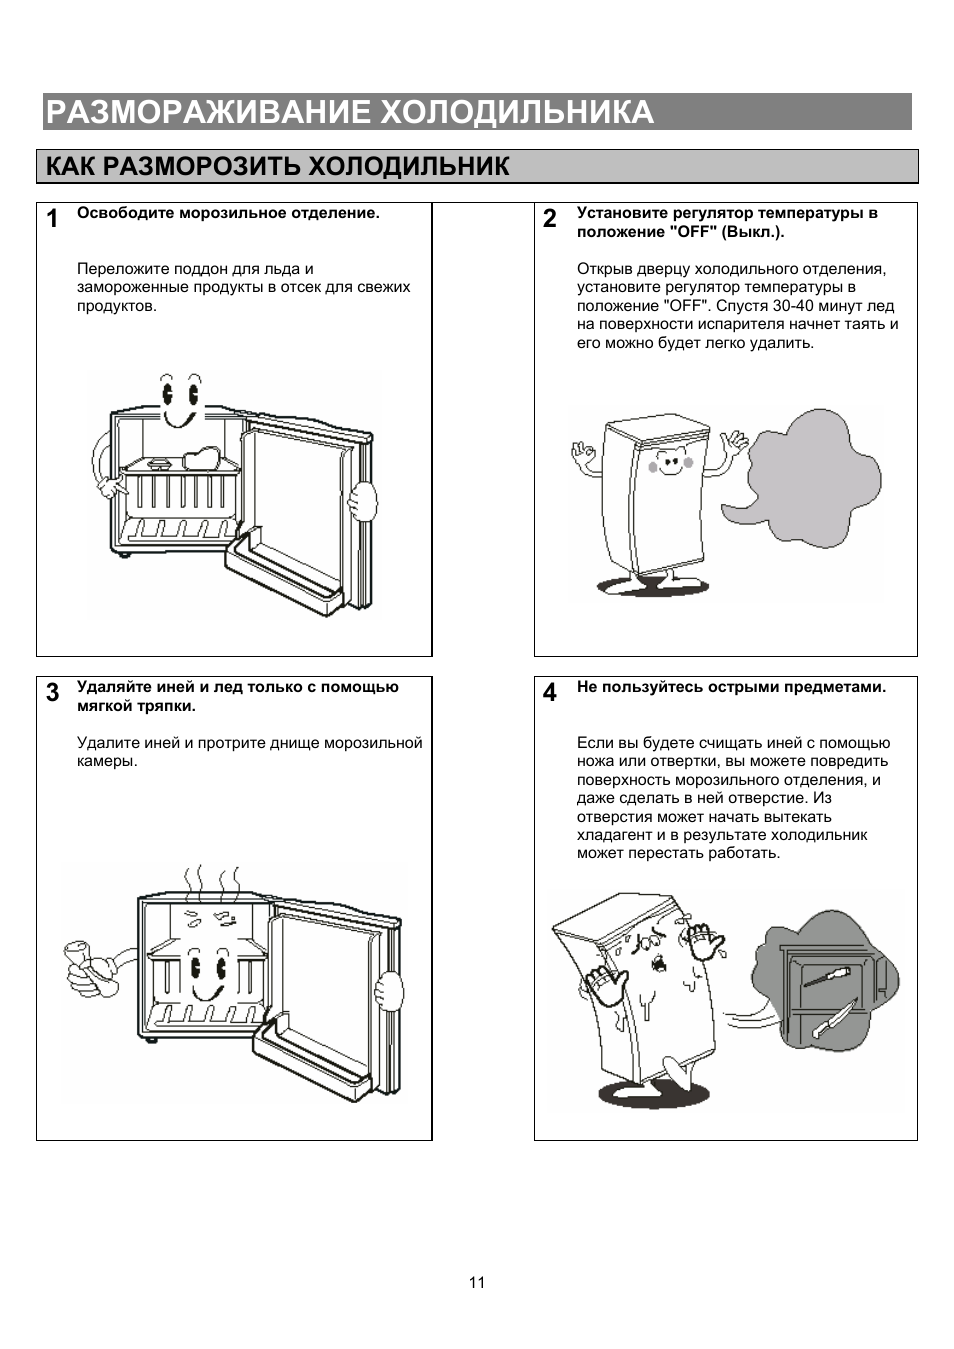 Инструкция по размораживанию холодильника